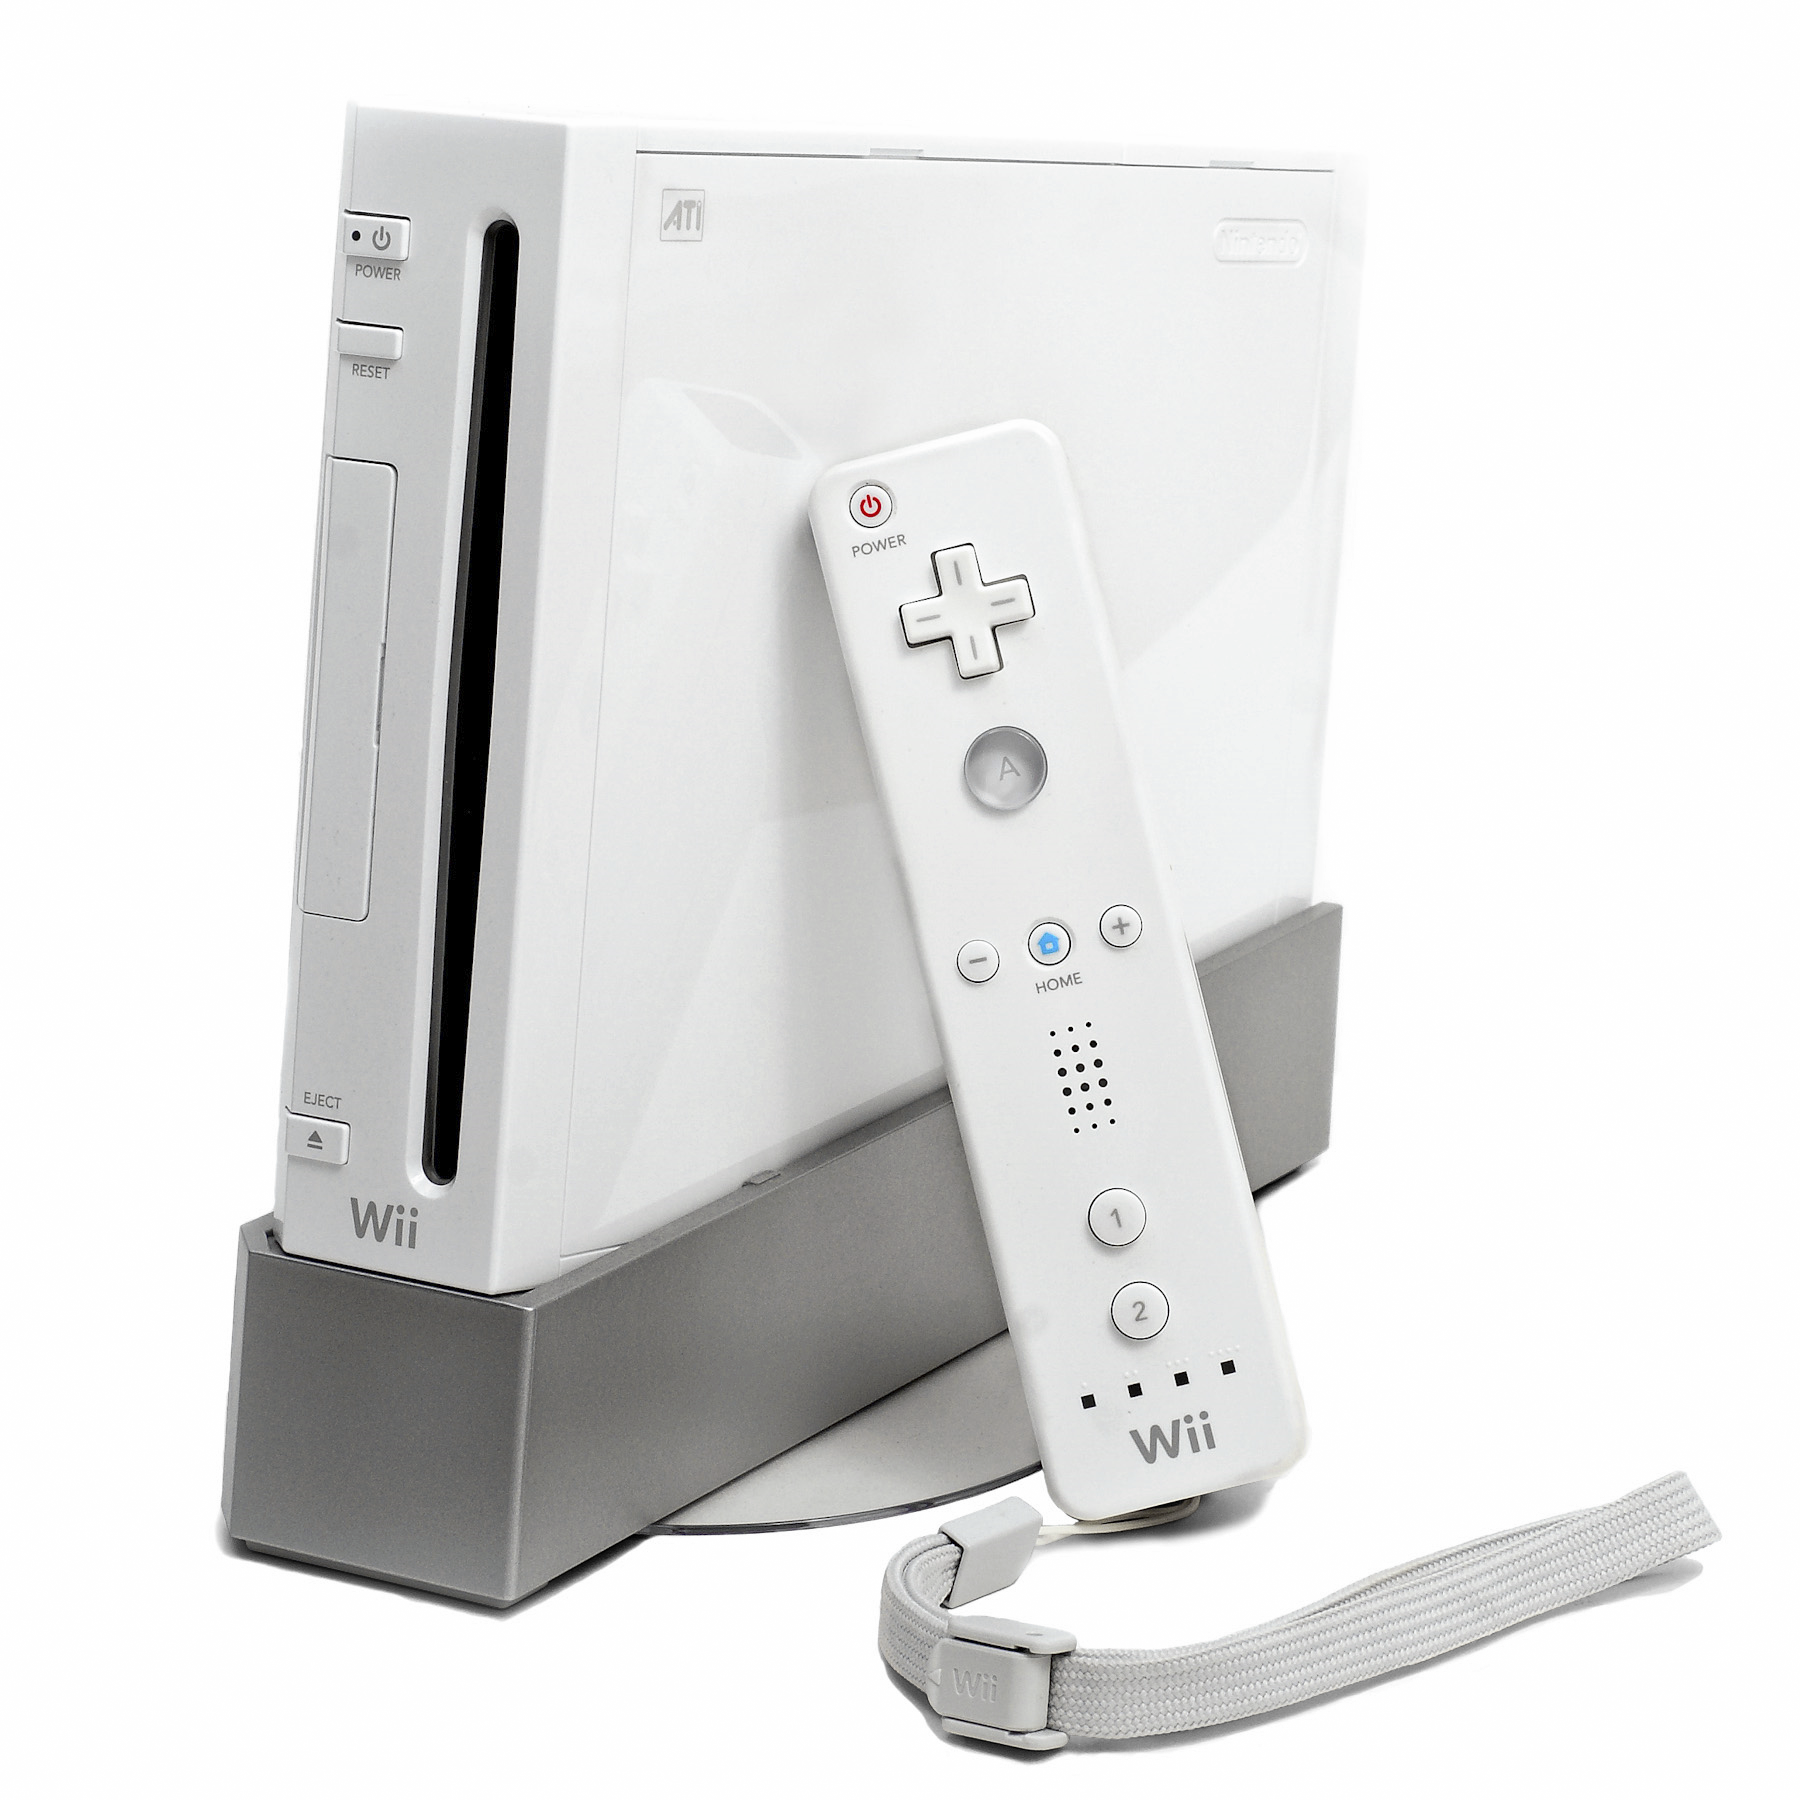 La Nintendo Wii, mucho más popular que la Wii Mini